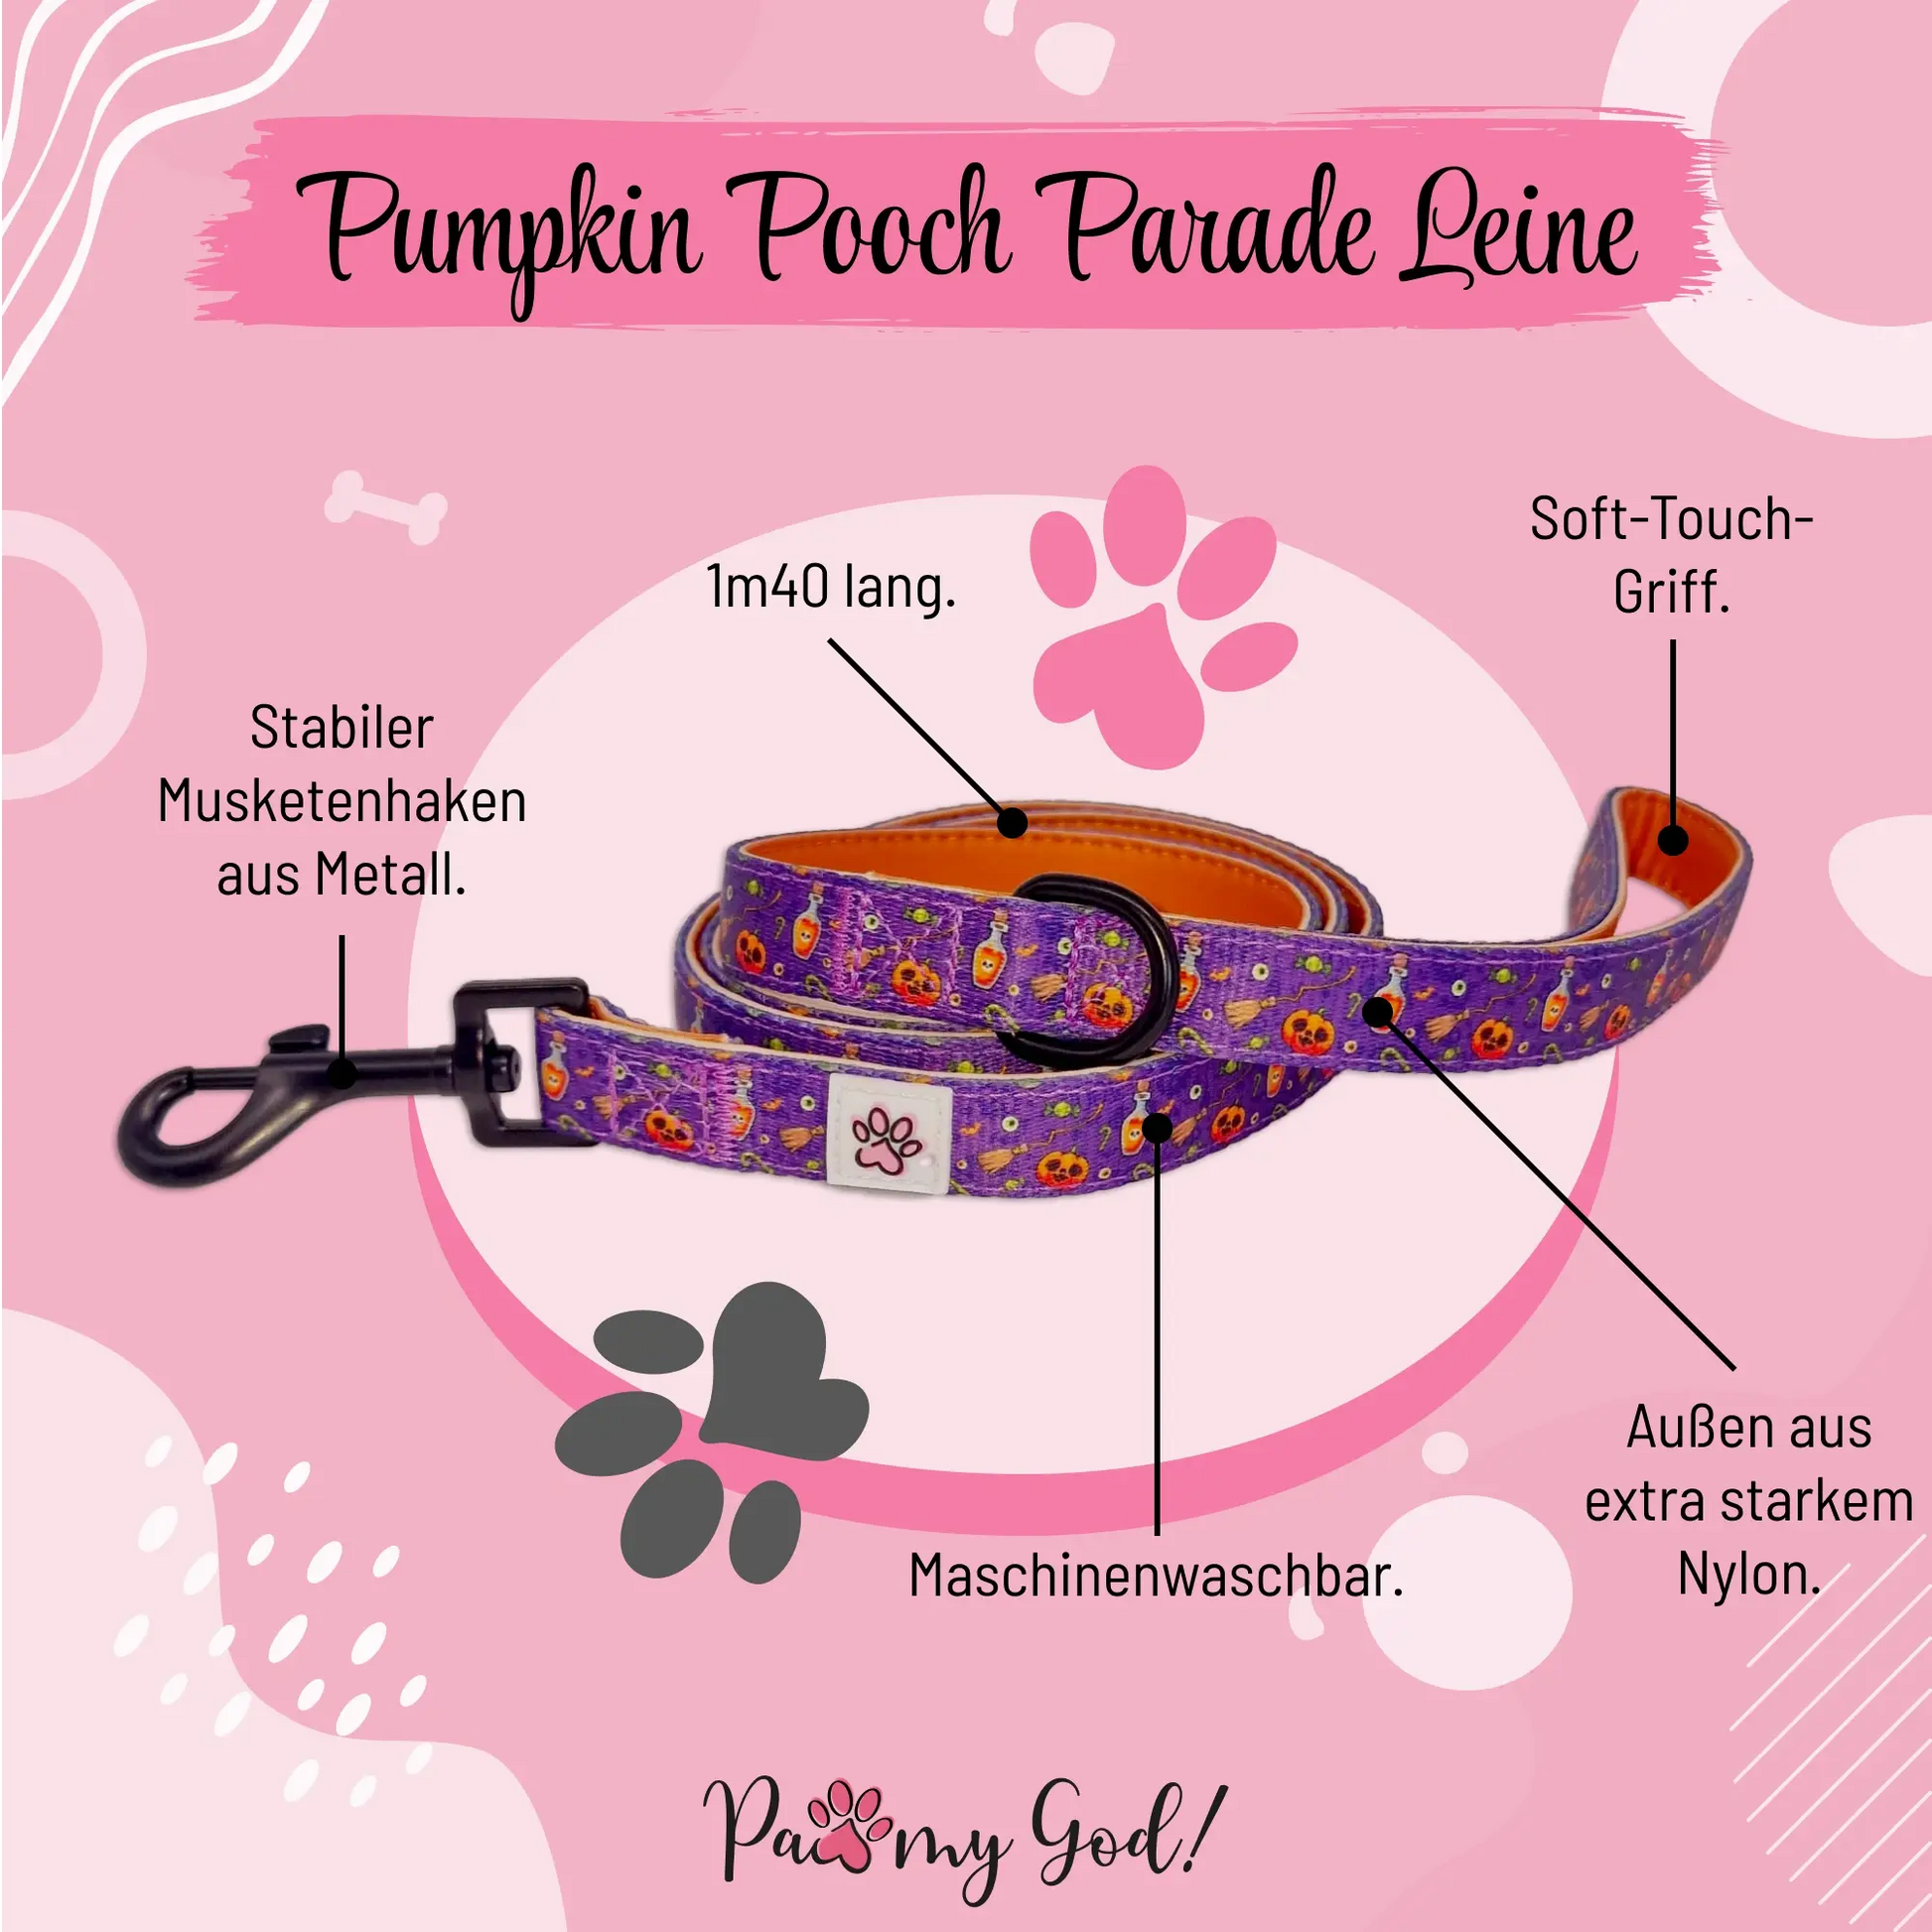 Pumpkin Pooch Parade Cloth Leash Features